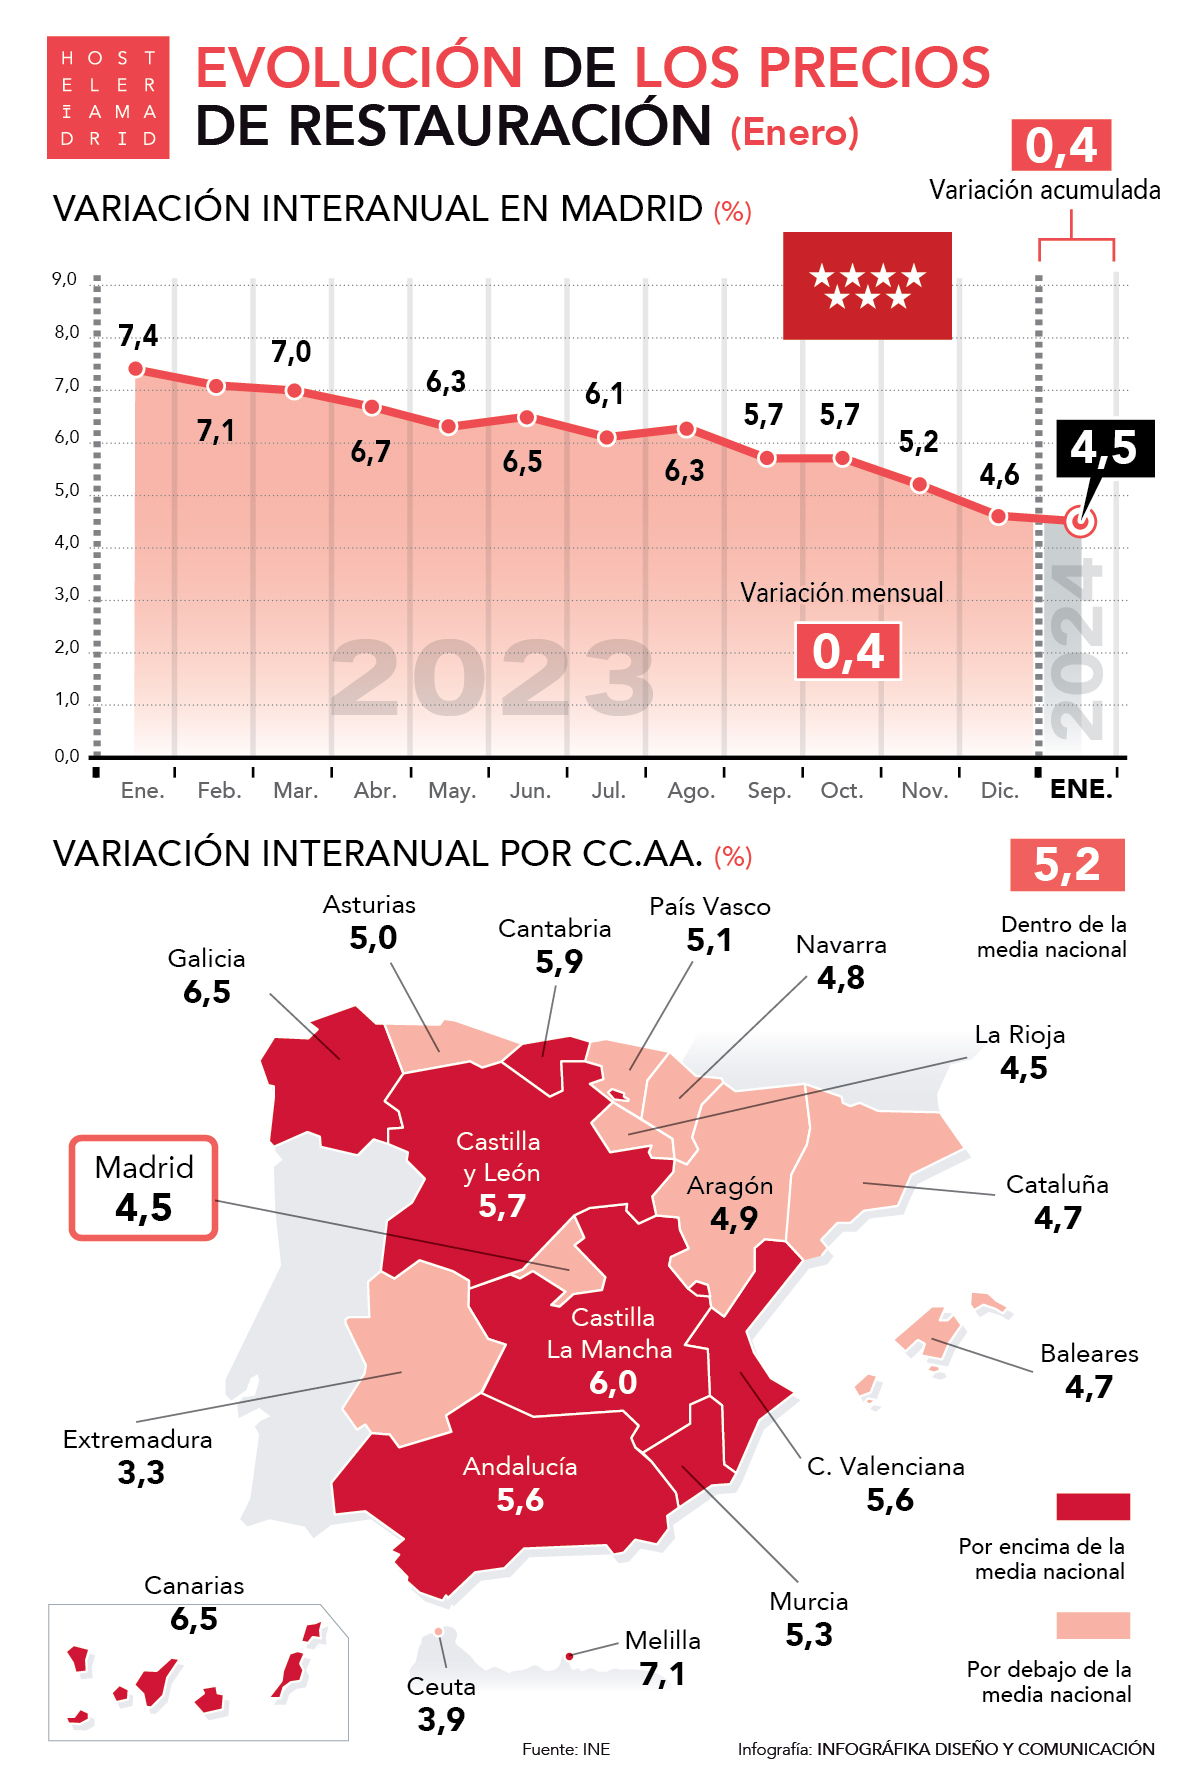 Los precios de restauración de Madrid suben un 4,5% en enero, cuatro décimas por debajo de la media nacional - La Viña